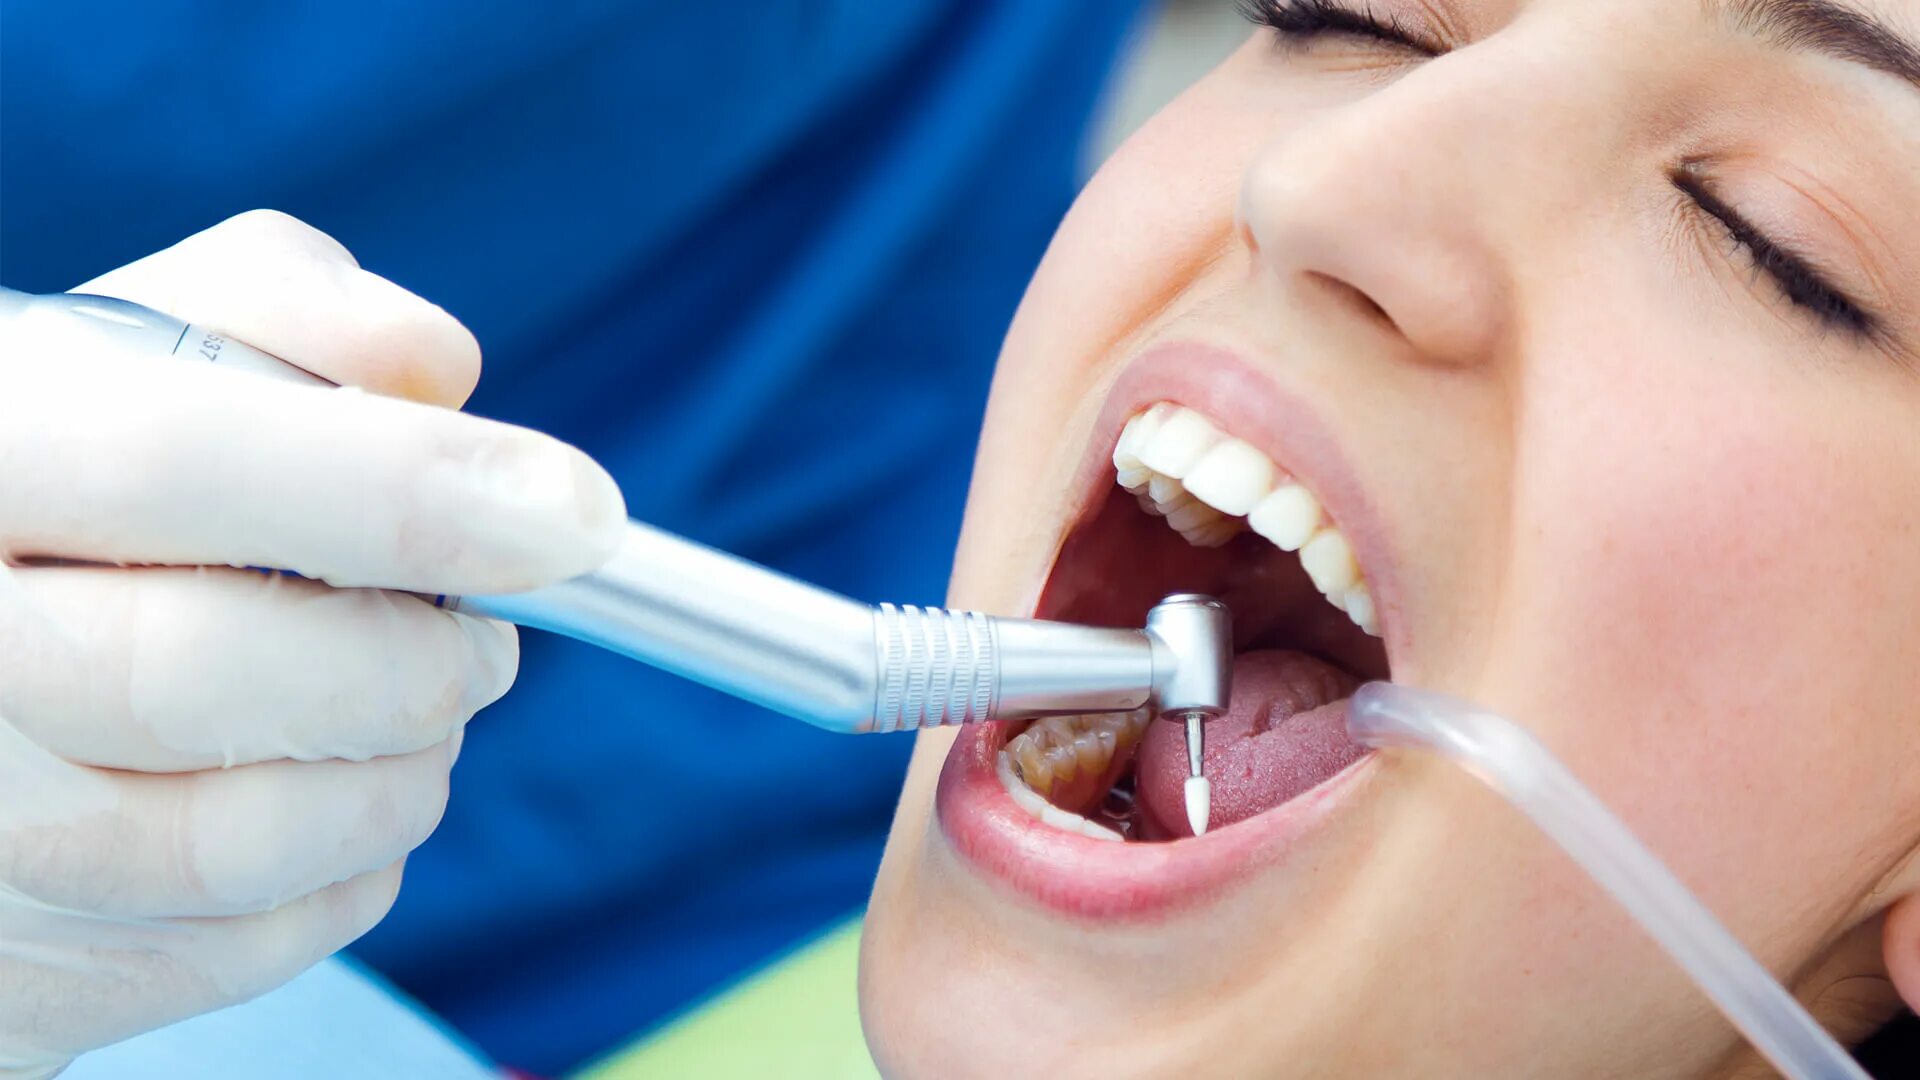 Чистка зубов после лечения. Профессиональная гигиена полости рта. Зубы стоматология.